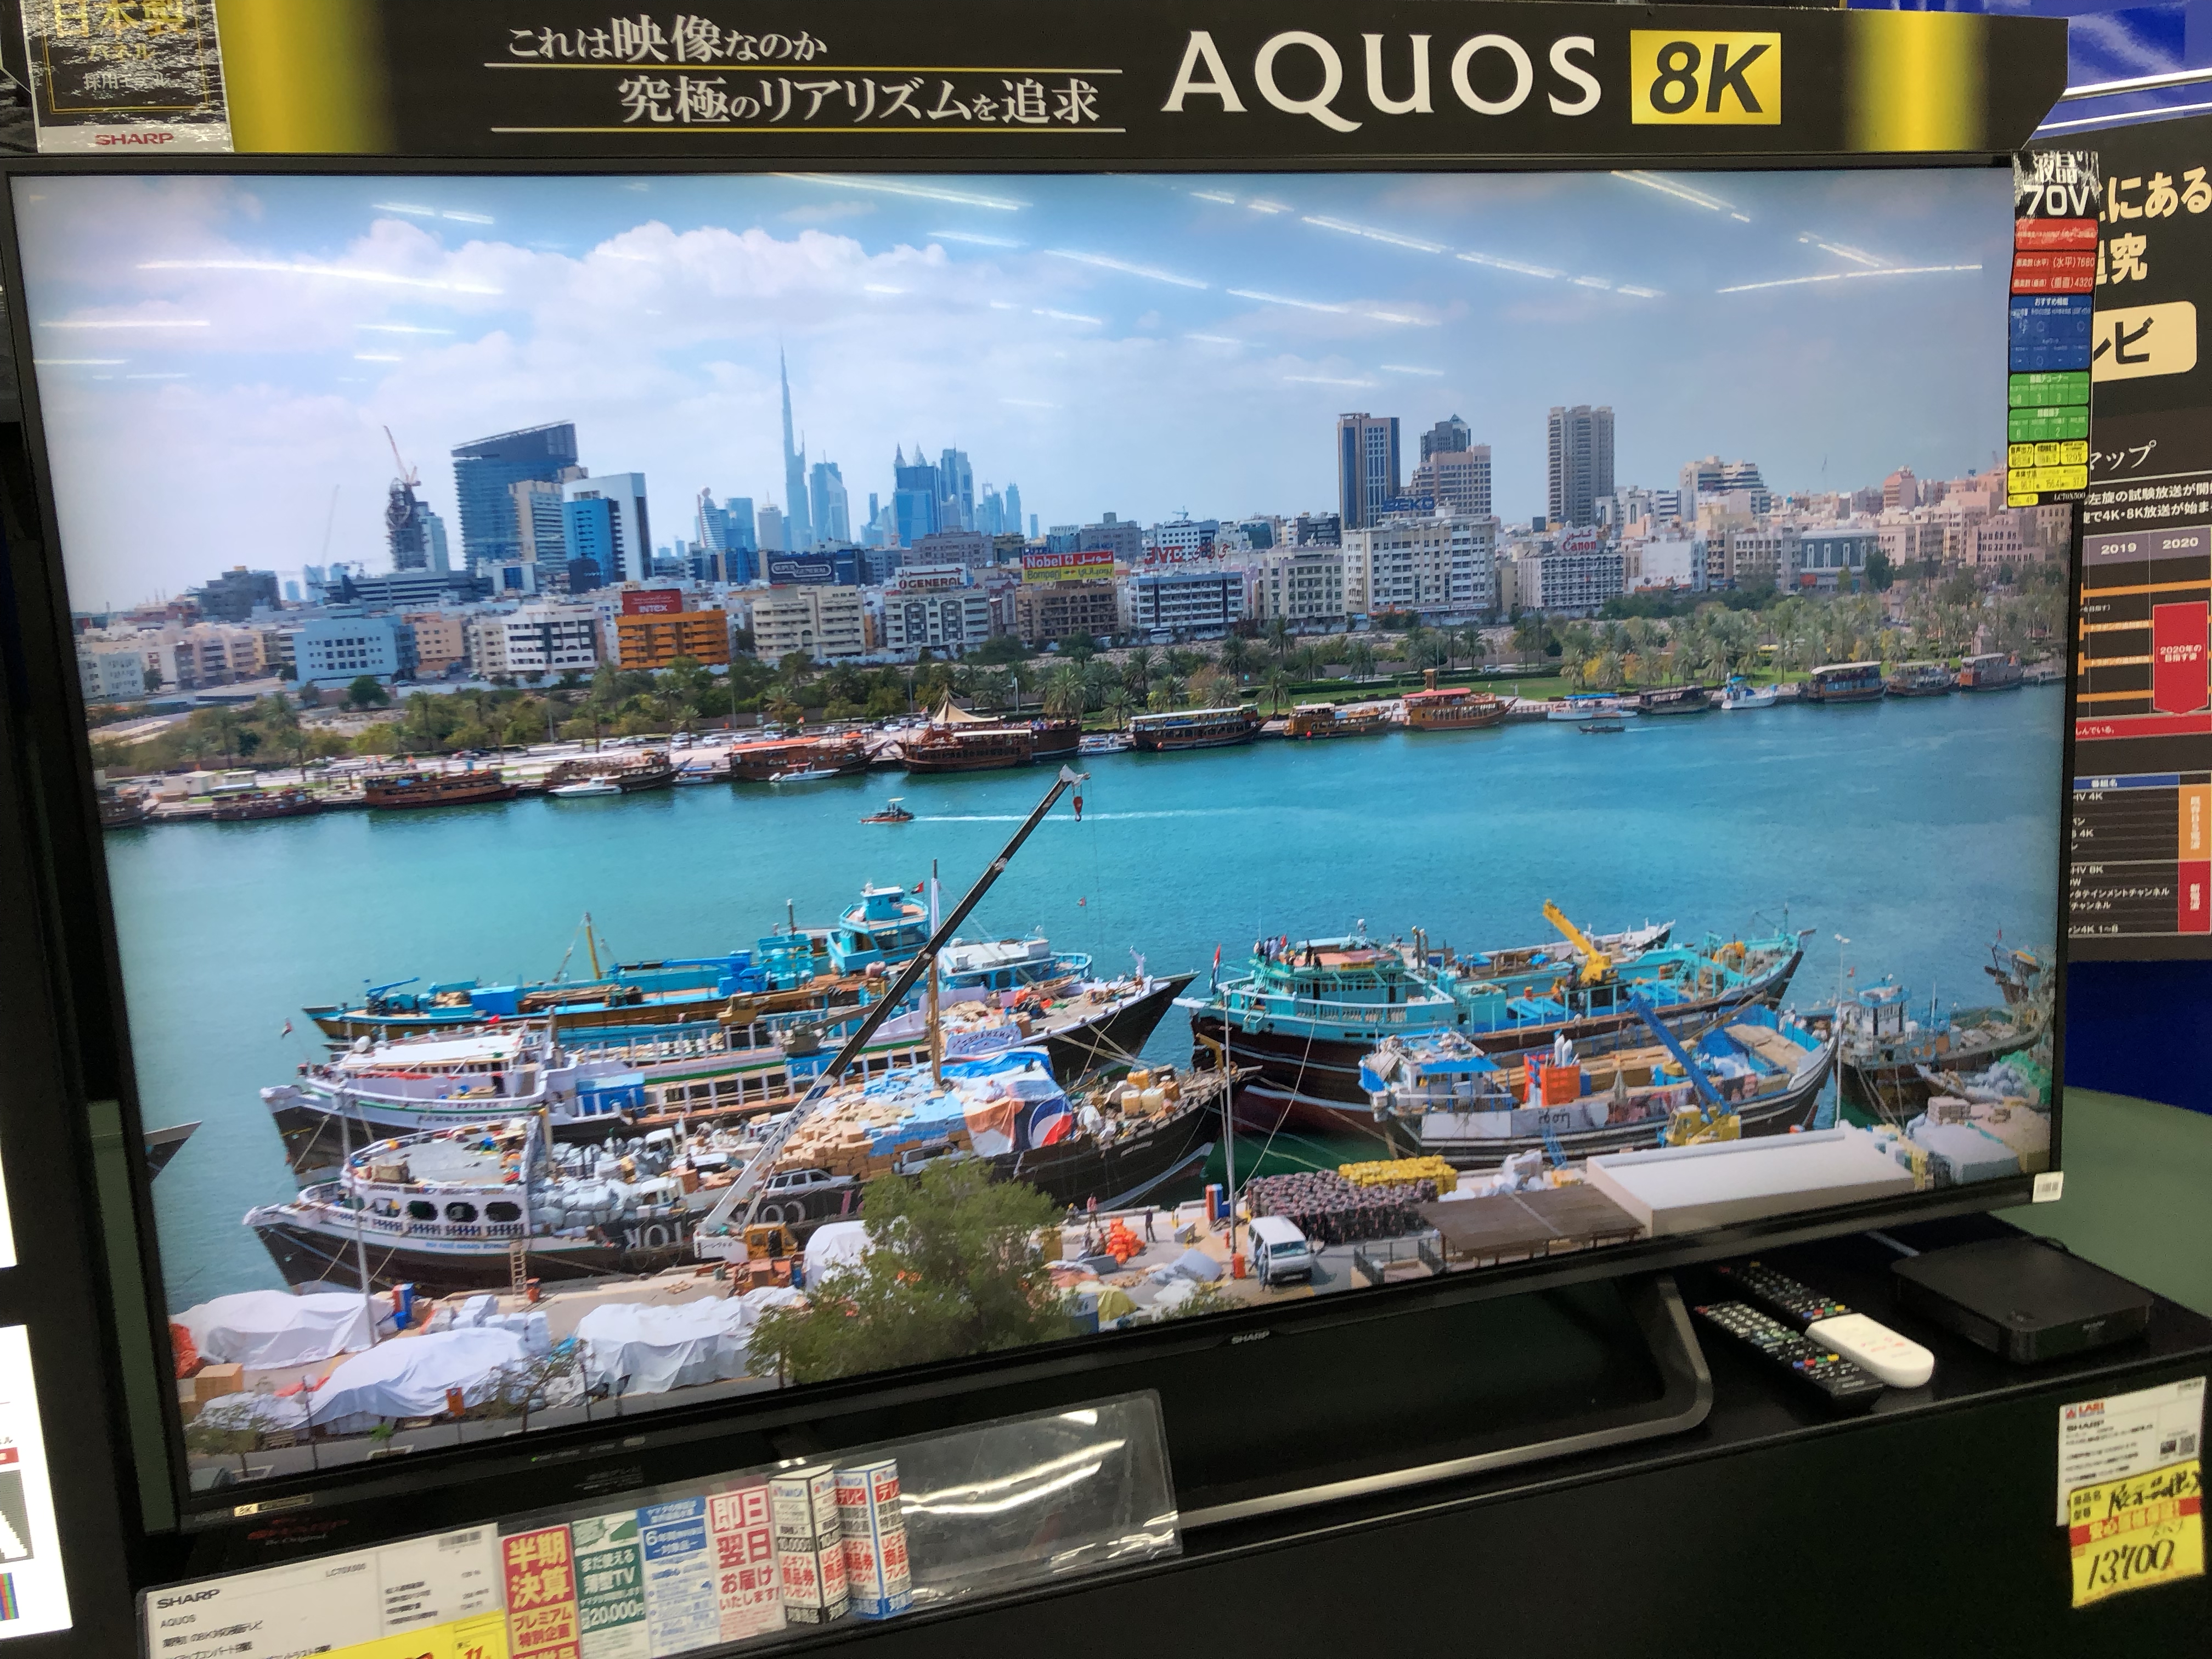 Nous avons vu une TV 8K en vente dans un magasin à Tokyo